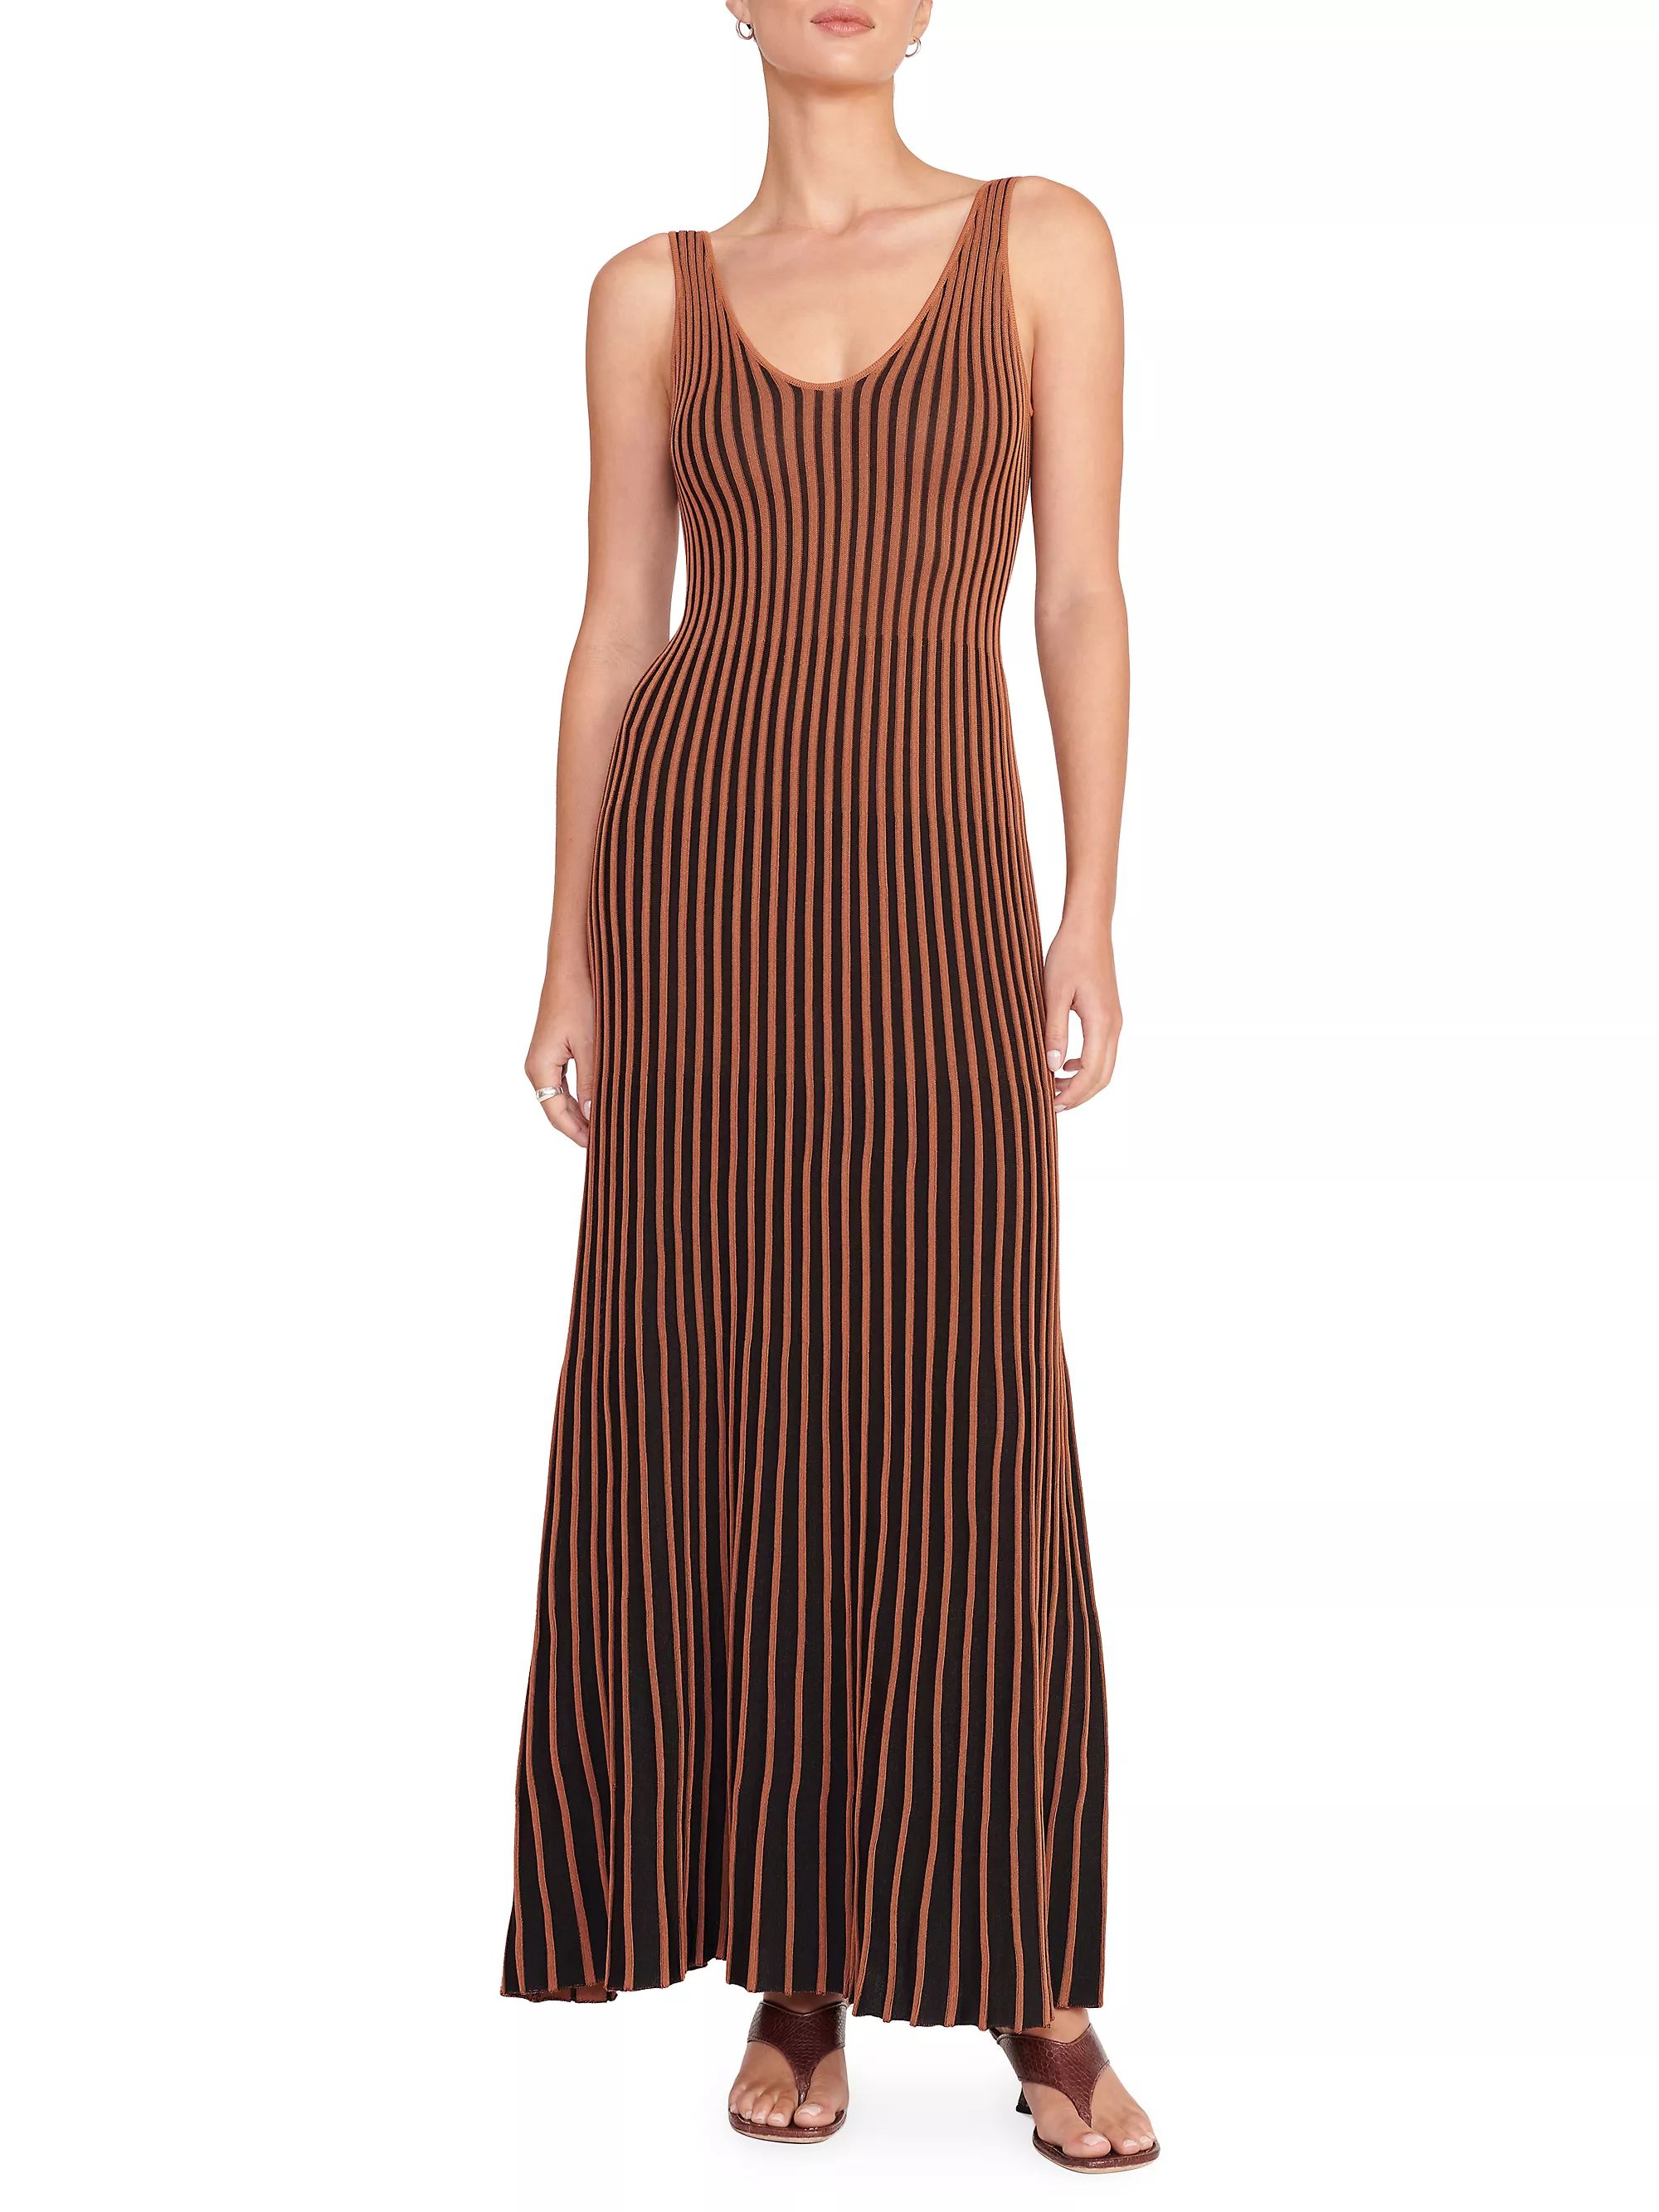 Claretta Striped Knit Maxi Dress | Saks Fifth Avenue